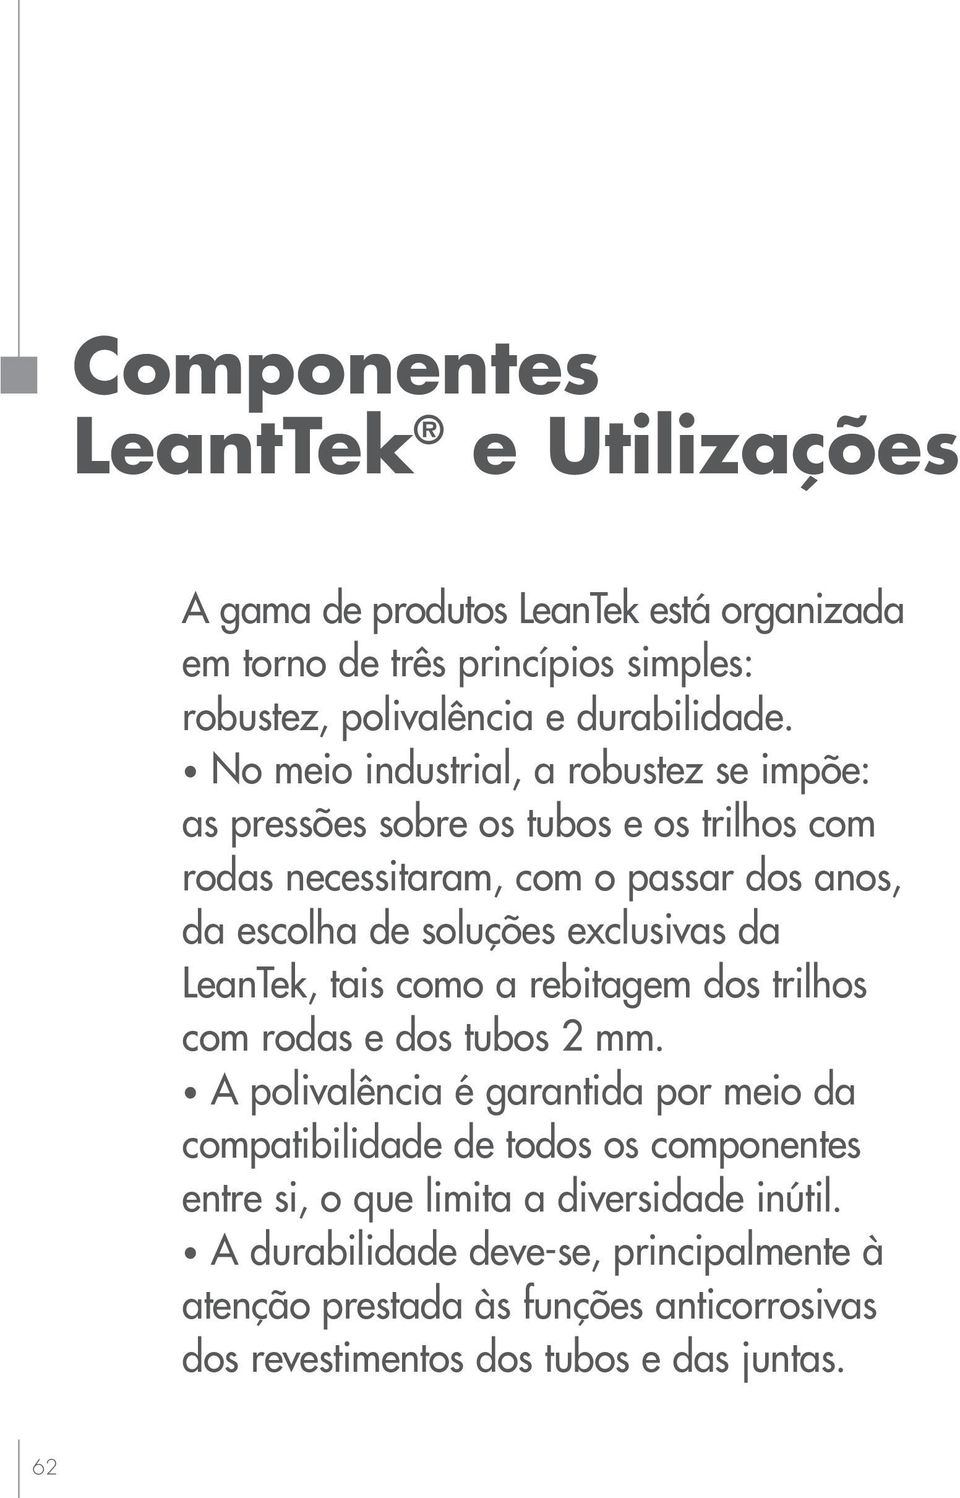 exclusivas da LeanTek, tais como a rebitagem dos trilhos com rodas e dos tubos 2 mm.